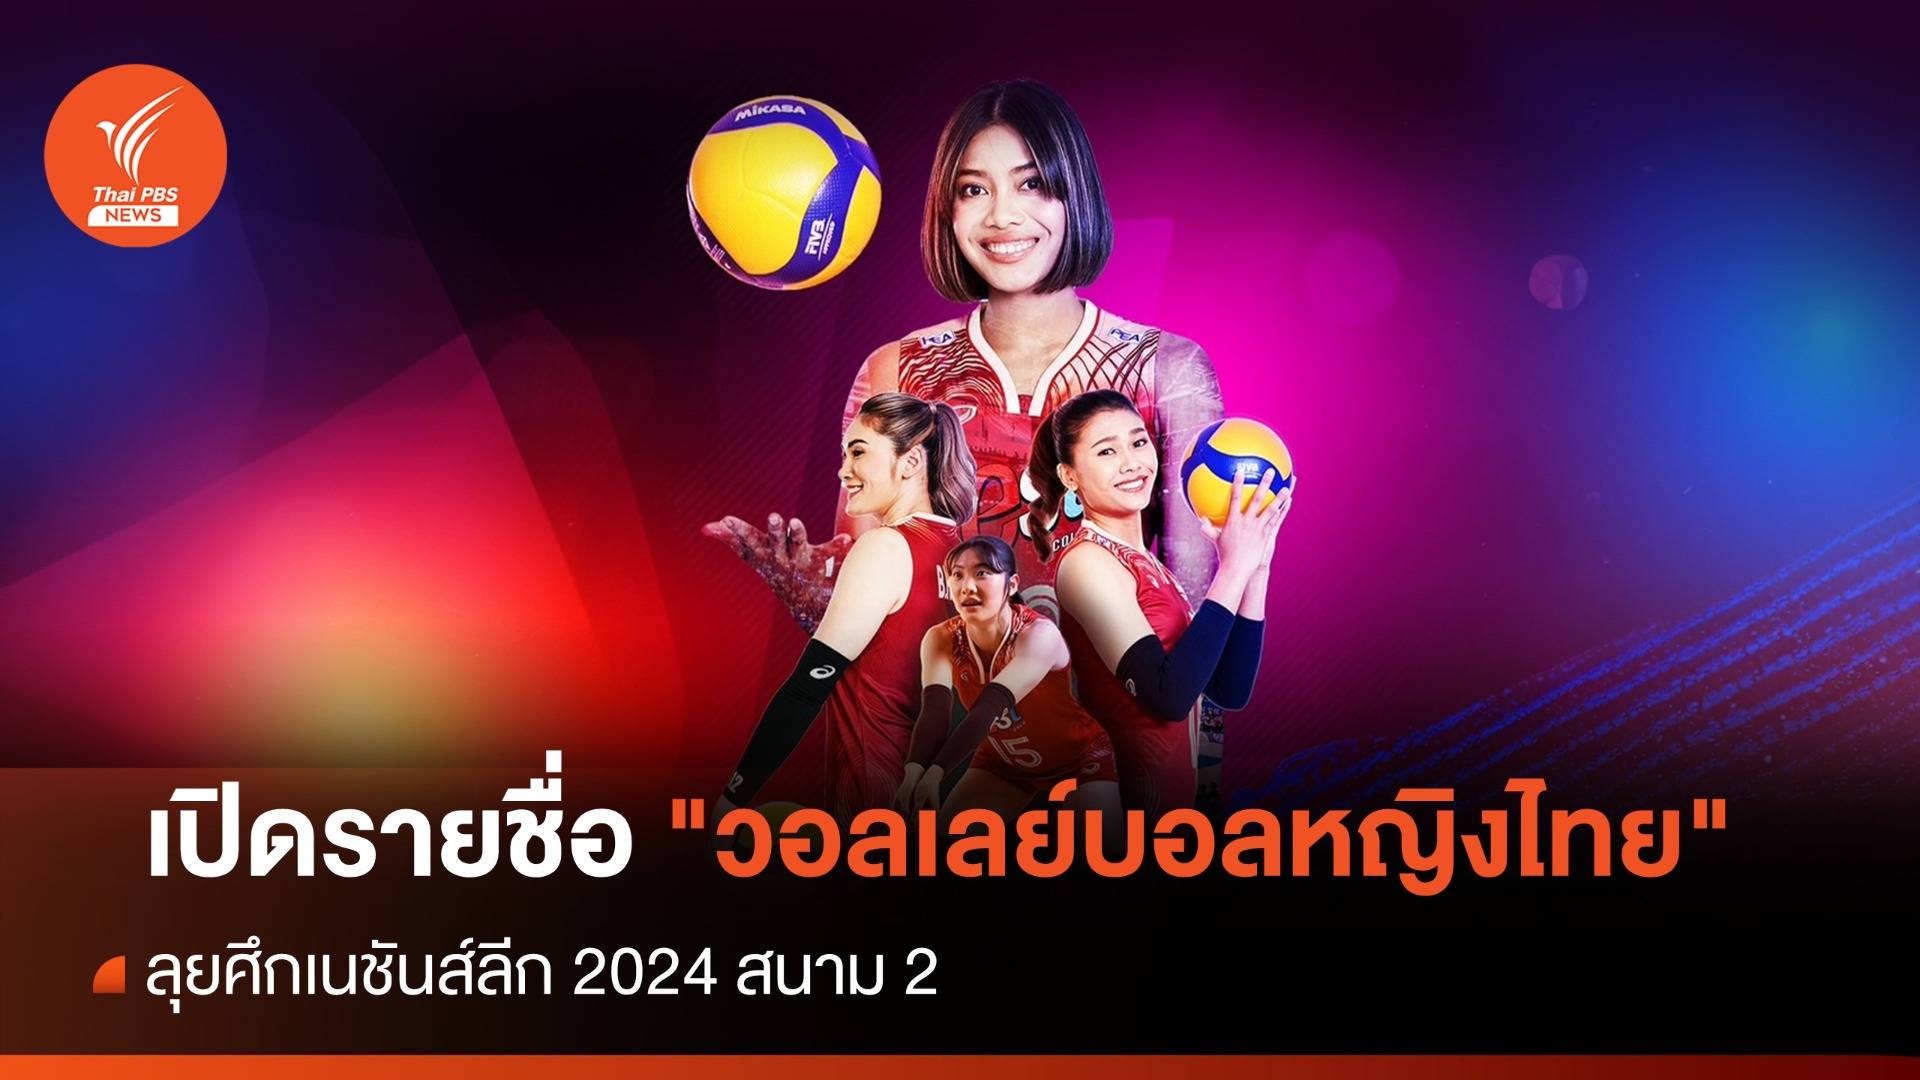 เปิดรายชื่อ "วอลเลย์บอลหญิงไทย" ศึกเนชันส์ลีก 2024 สนาม 2